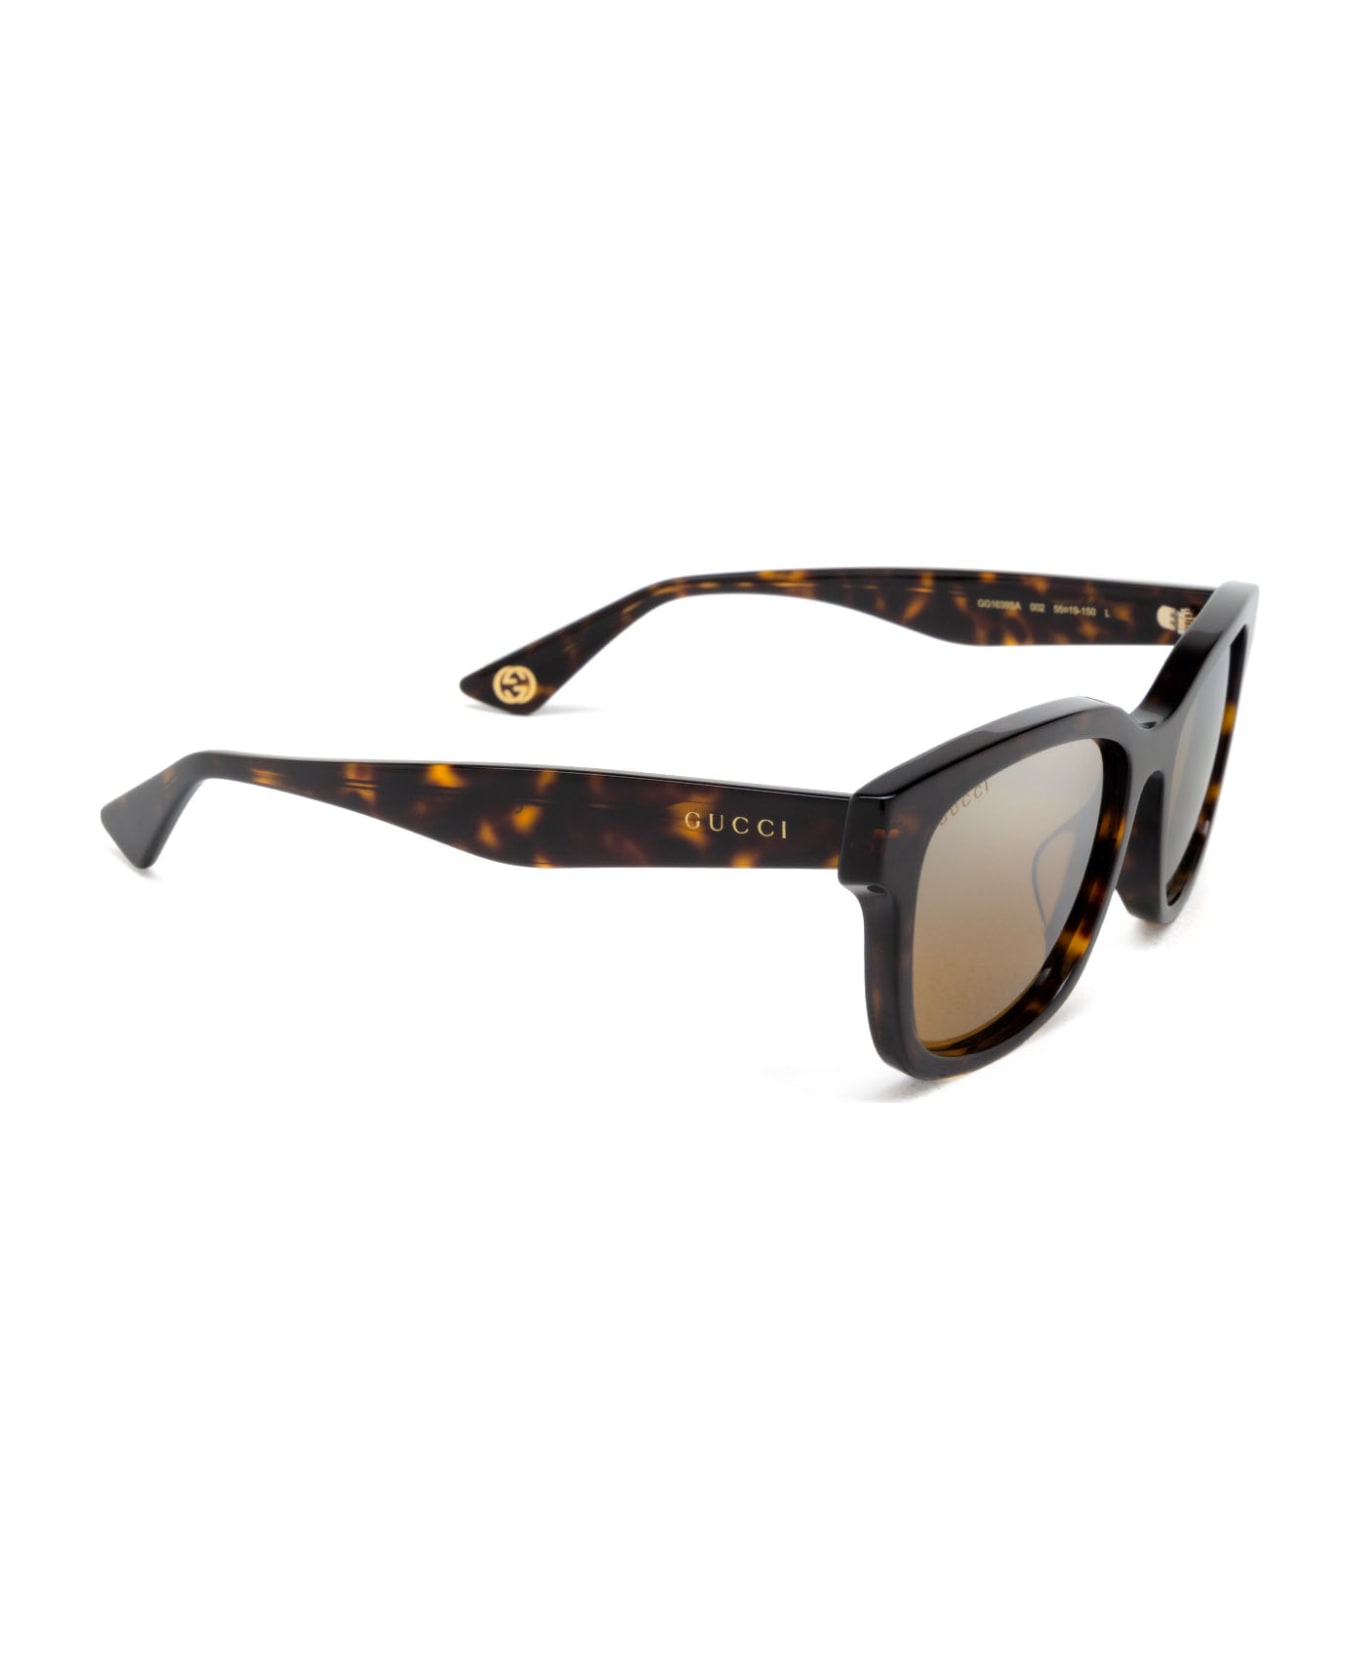 Gucci Eyewear Gg1639sa Havana Sunglasses - Havana